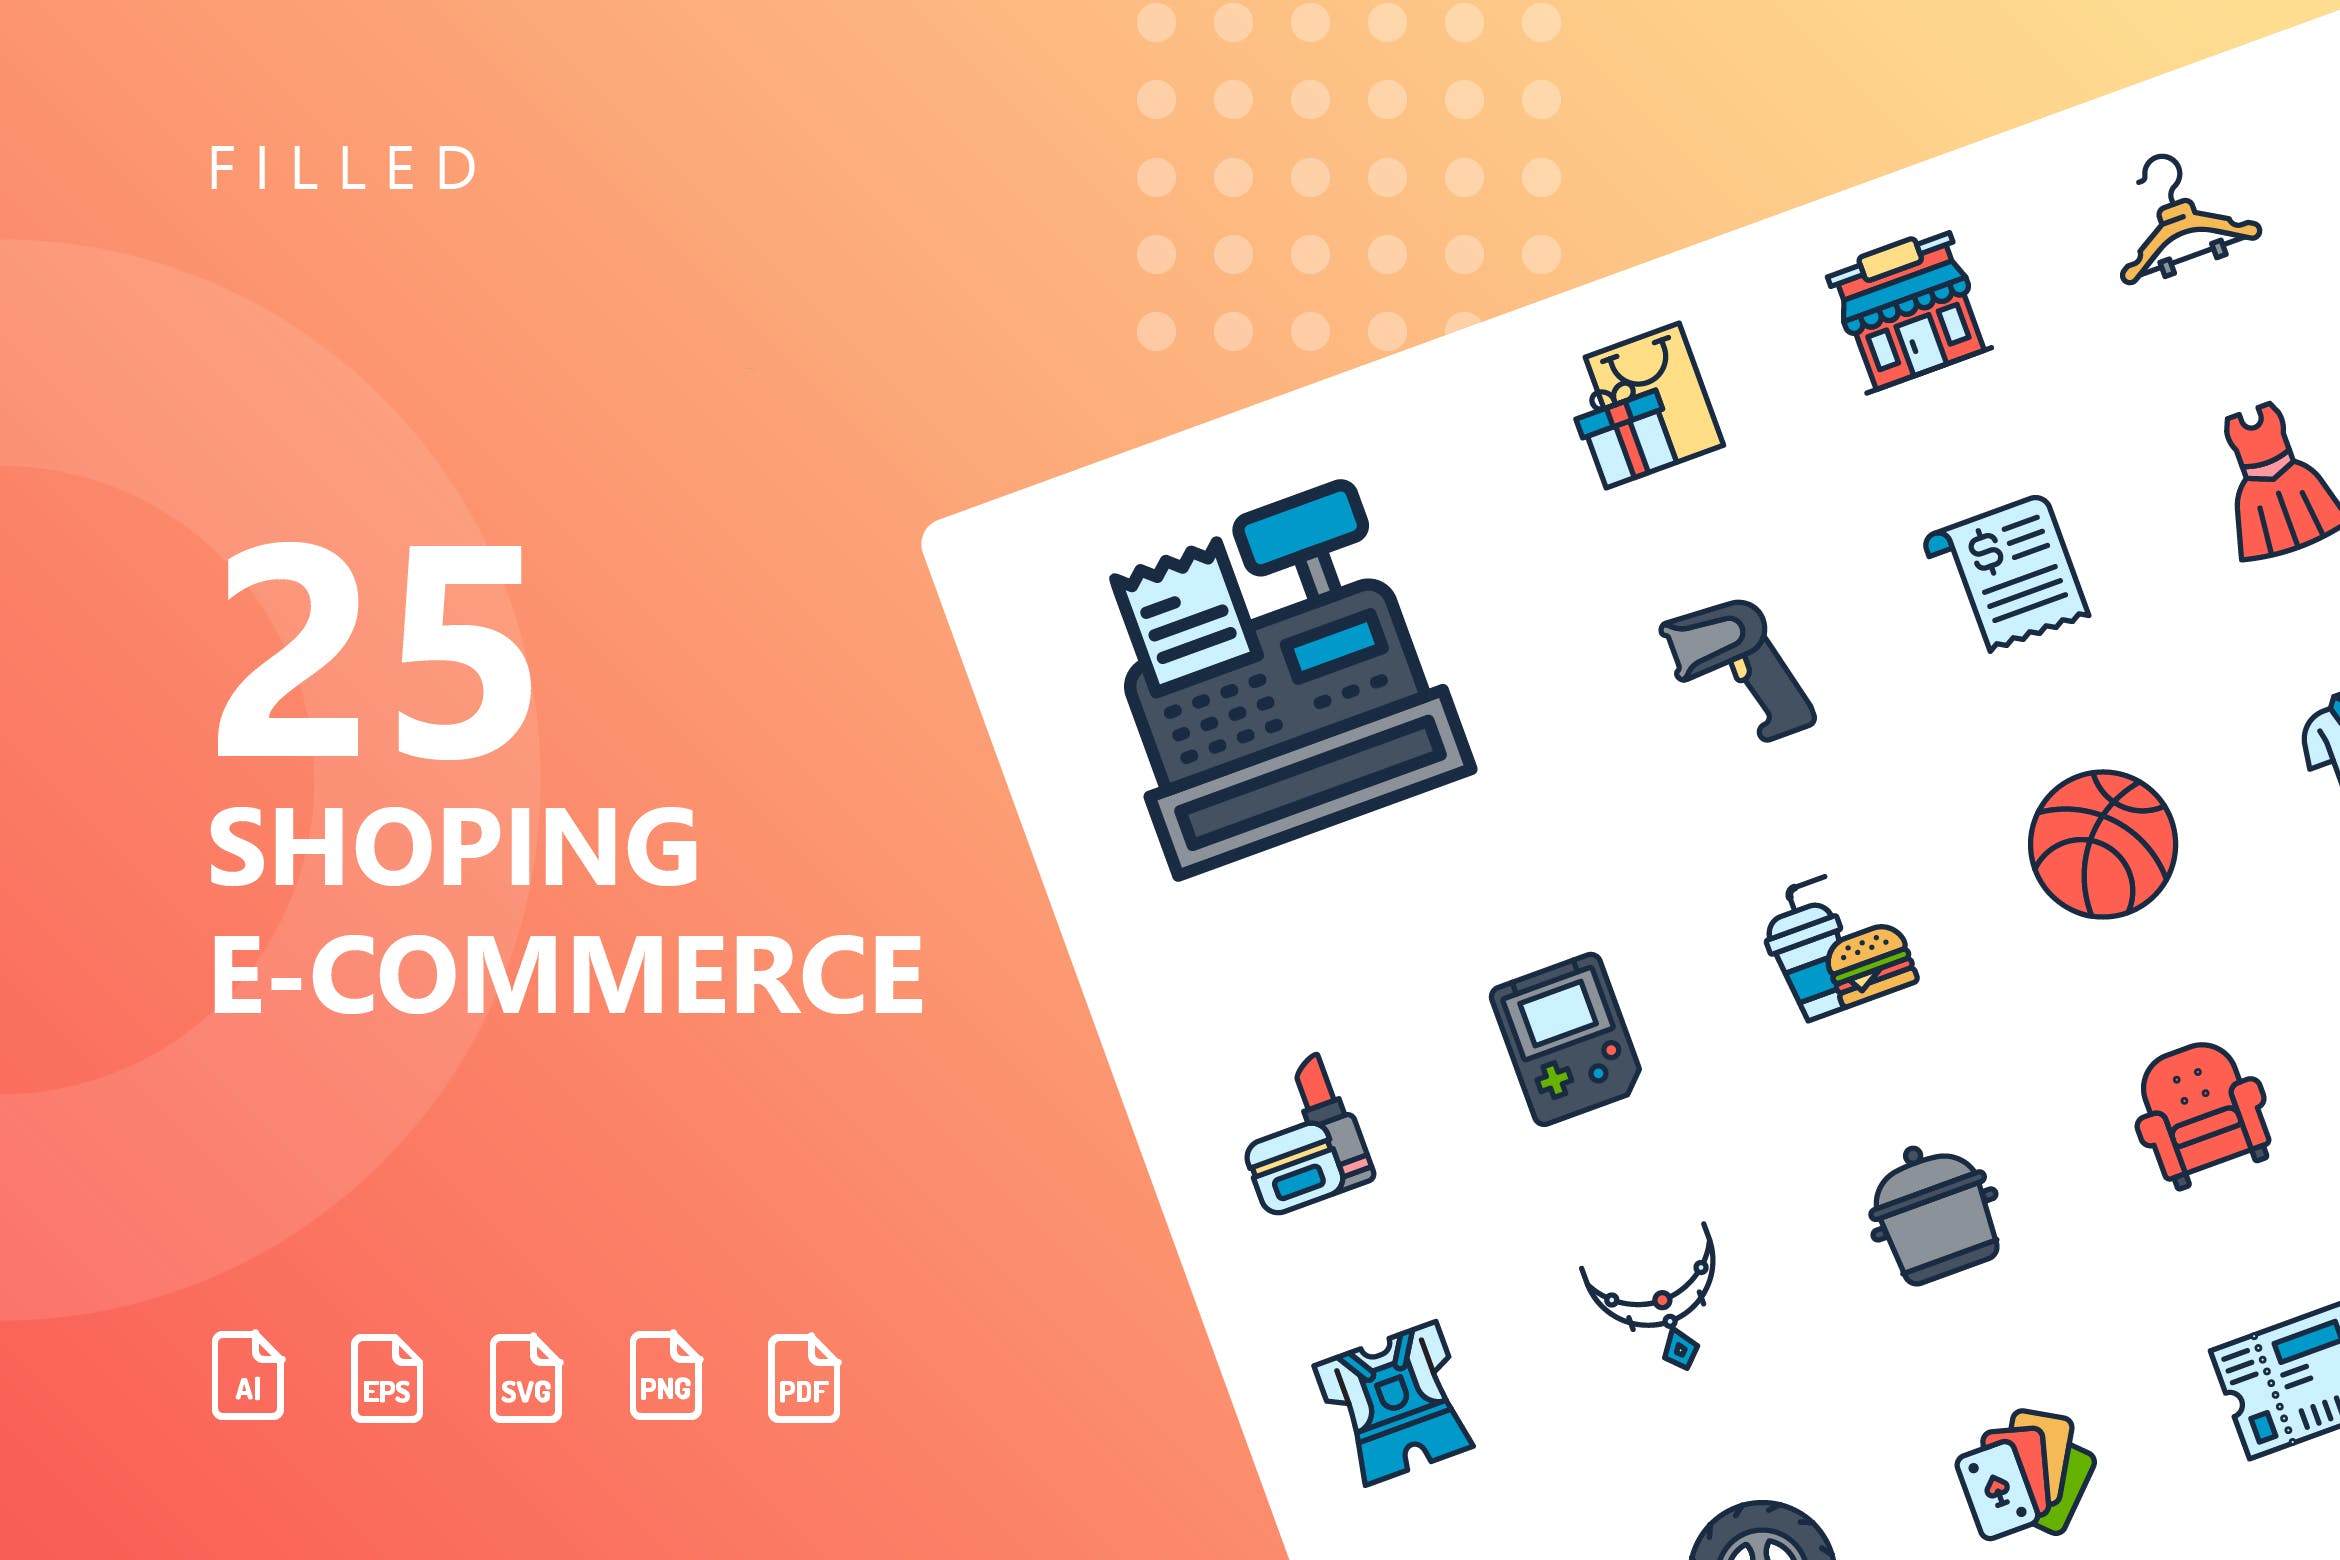 25枚网上购物电子商务矢量填充色蚂蚁素材精选图标v2 Shopping E-Commerce Filled Icons插图